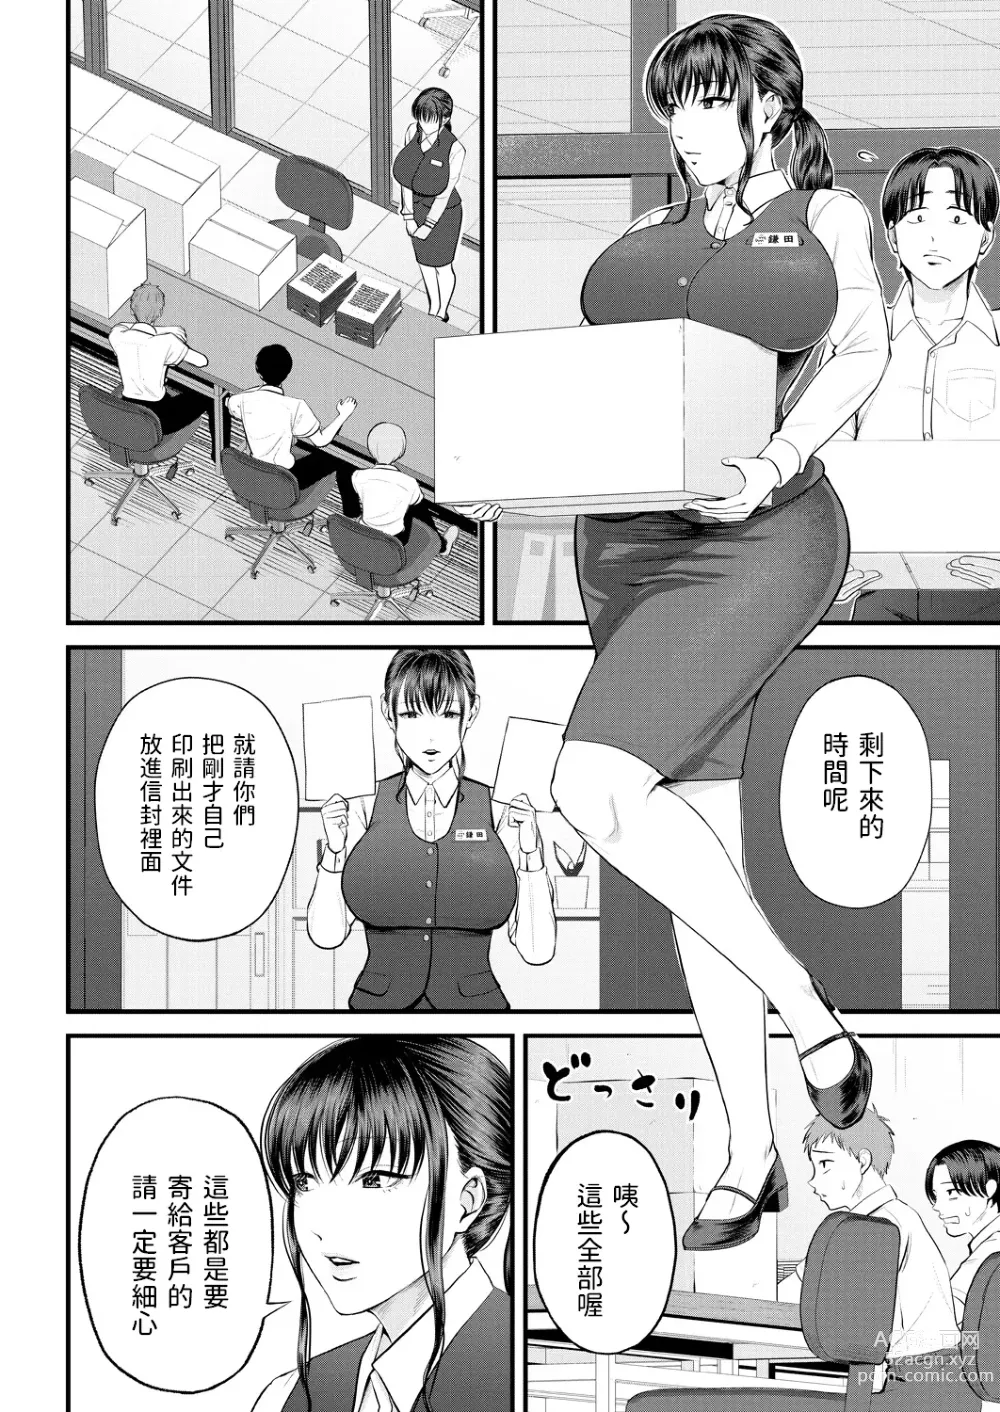 Page 4 of manga Naisho no Shokuba Taiken